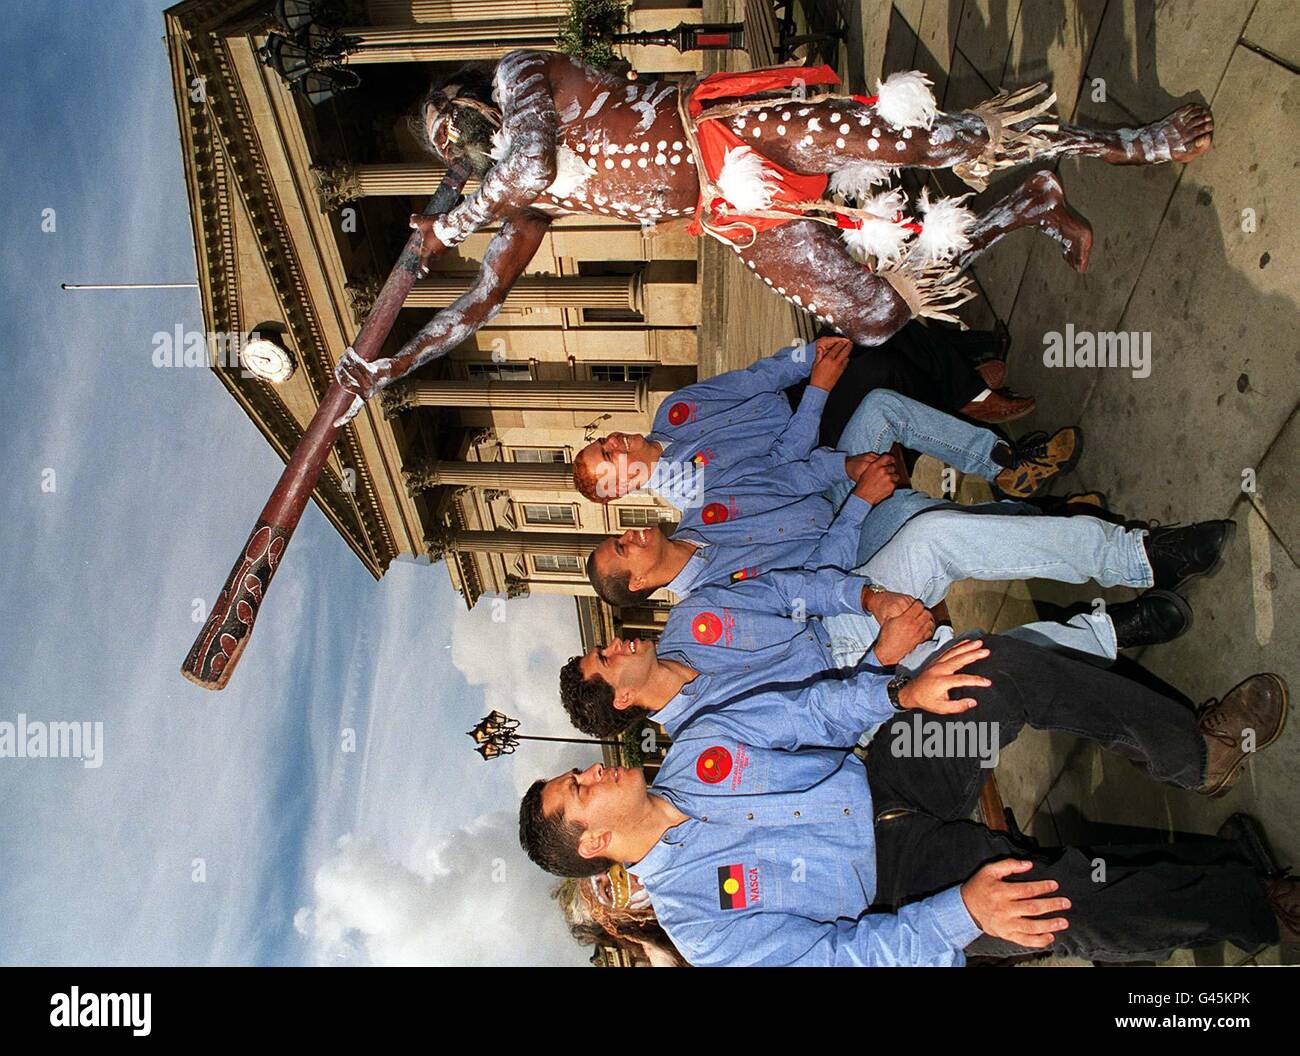 Un fanfare didgeridoo annuncia l'arrivo dei 'Kooris', tutti i turisti aborigeni australiani della Rugby League dilettanti in Gran Bretagna per una Test Series contro il BARLA GT. Lions della Gran Bretagna. La squadra si trovava a Huddersfield oggi (ven), dove i giocatori fotografati da Cecil Heron (Capt), Anthony Munns, Dallas Waters e Mark Simon incontrarono i media insieme ad un anziano aborigeno, in completo abito culturale. Foto John Giles.PA. Foto Stock